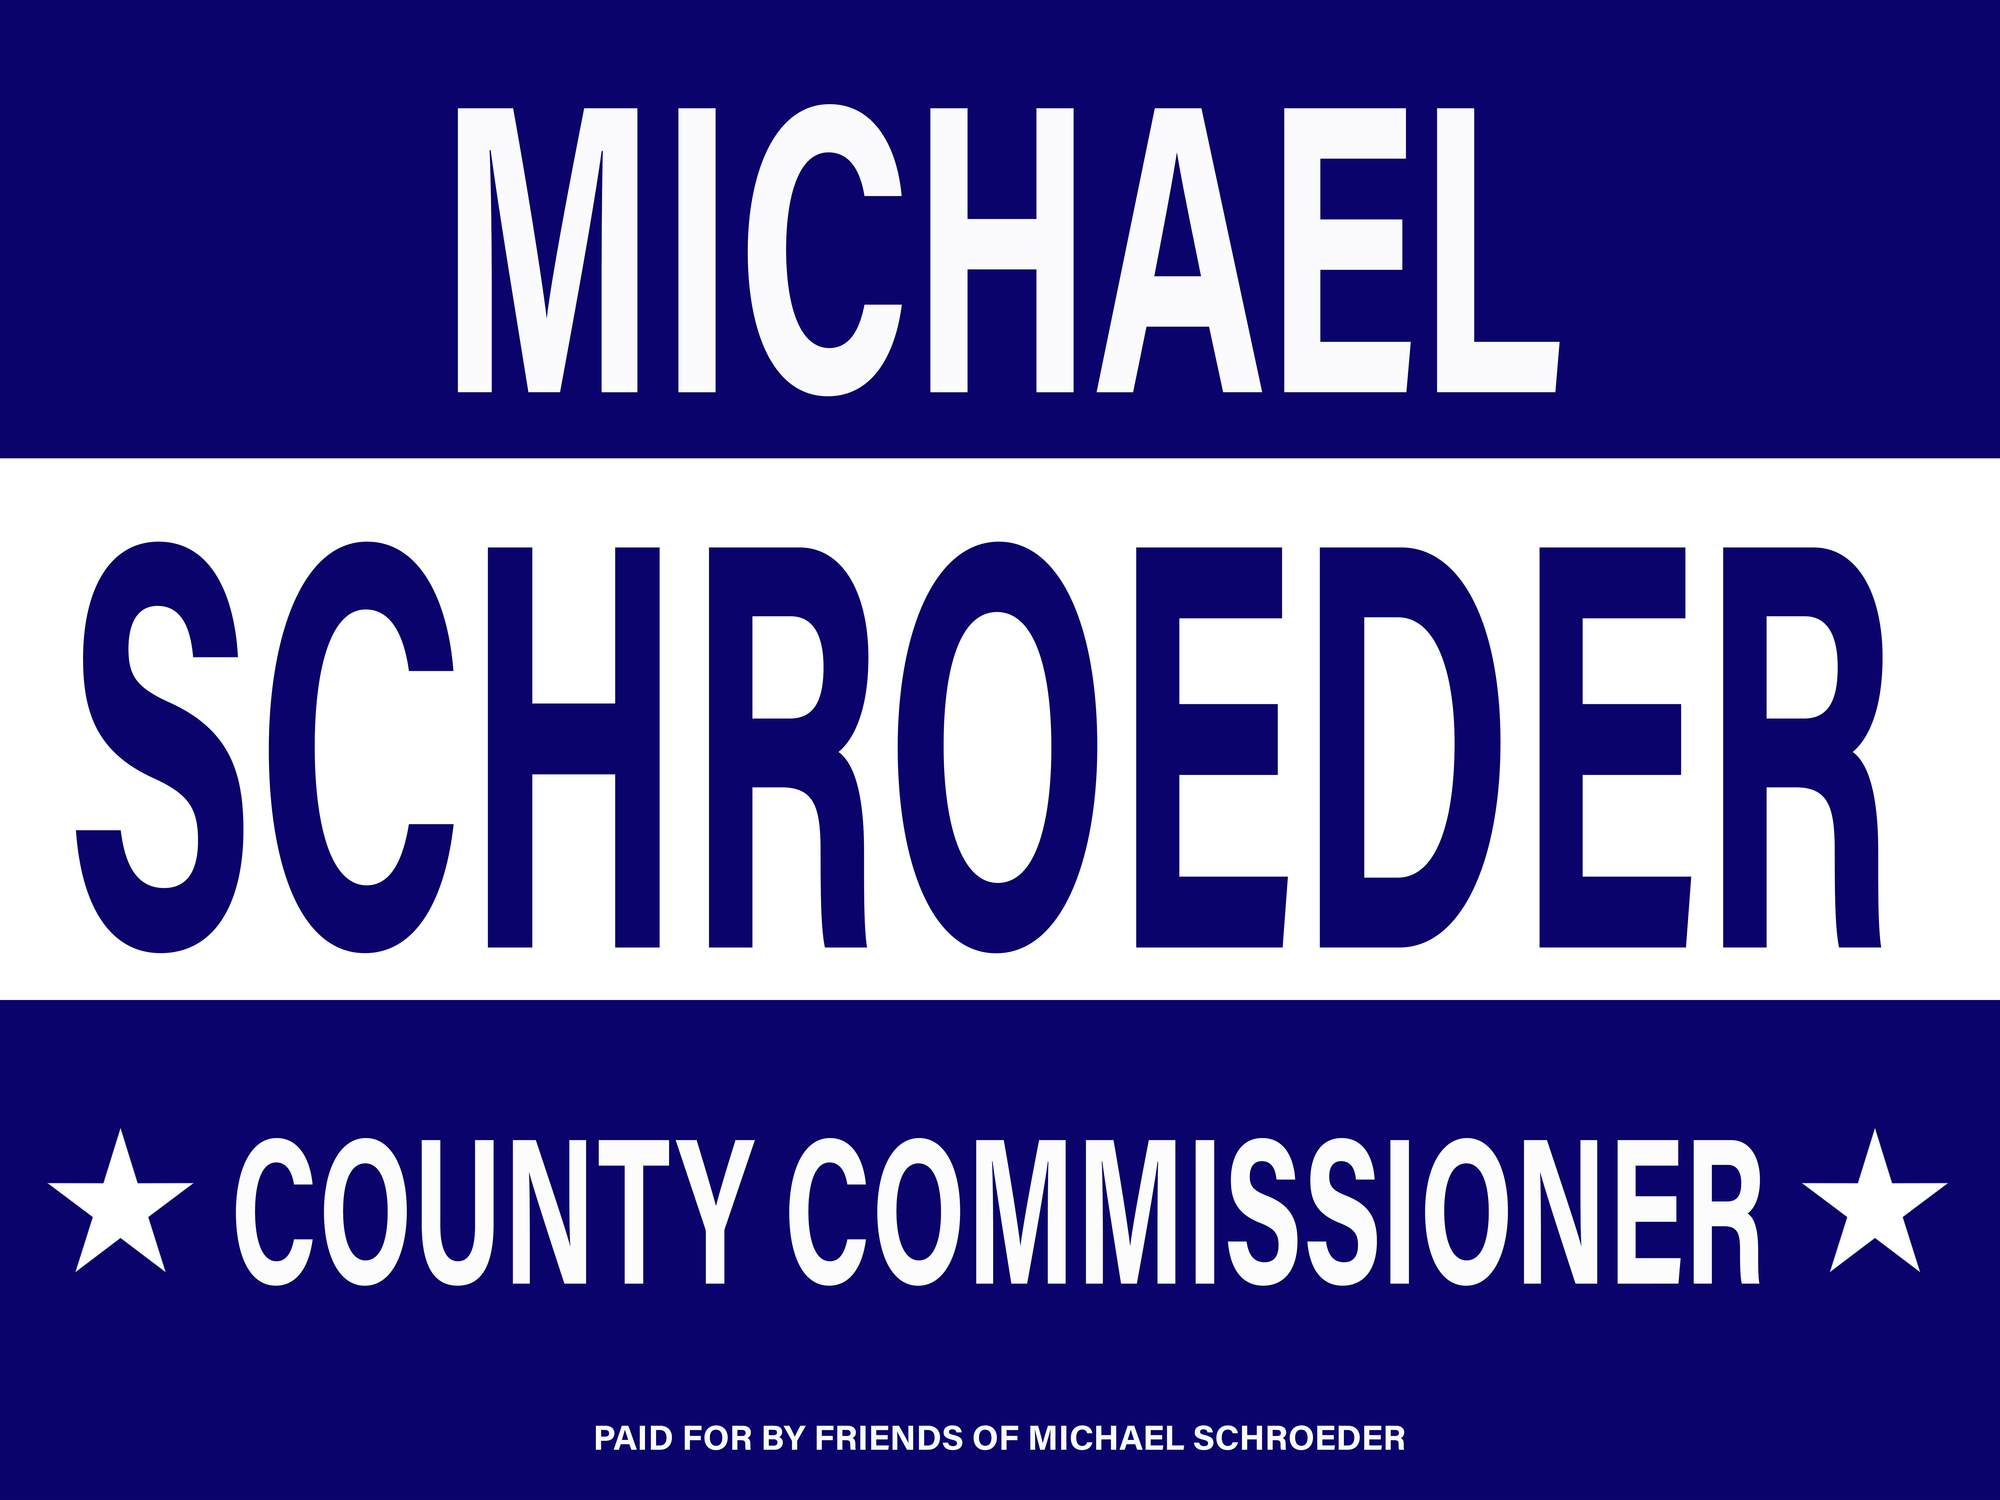 Friends of Michael Schroeder